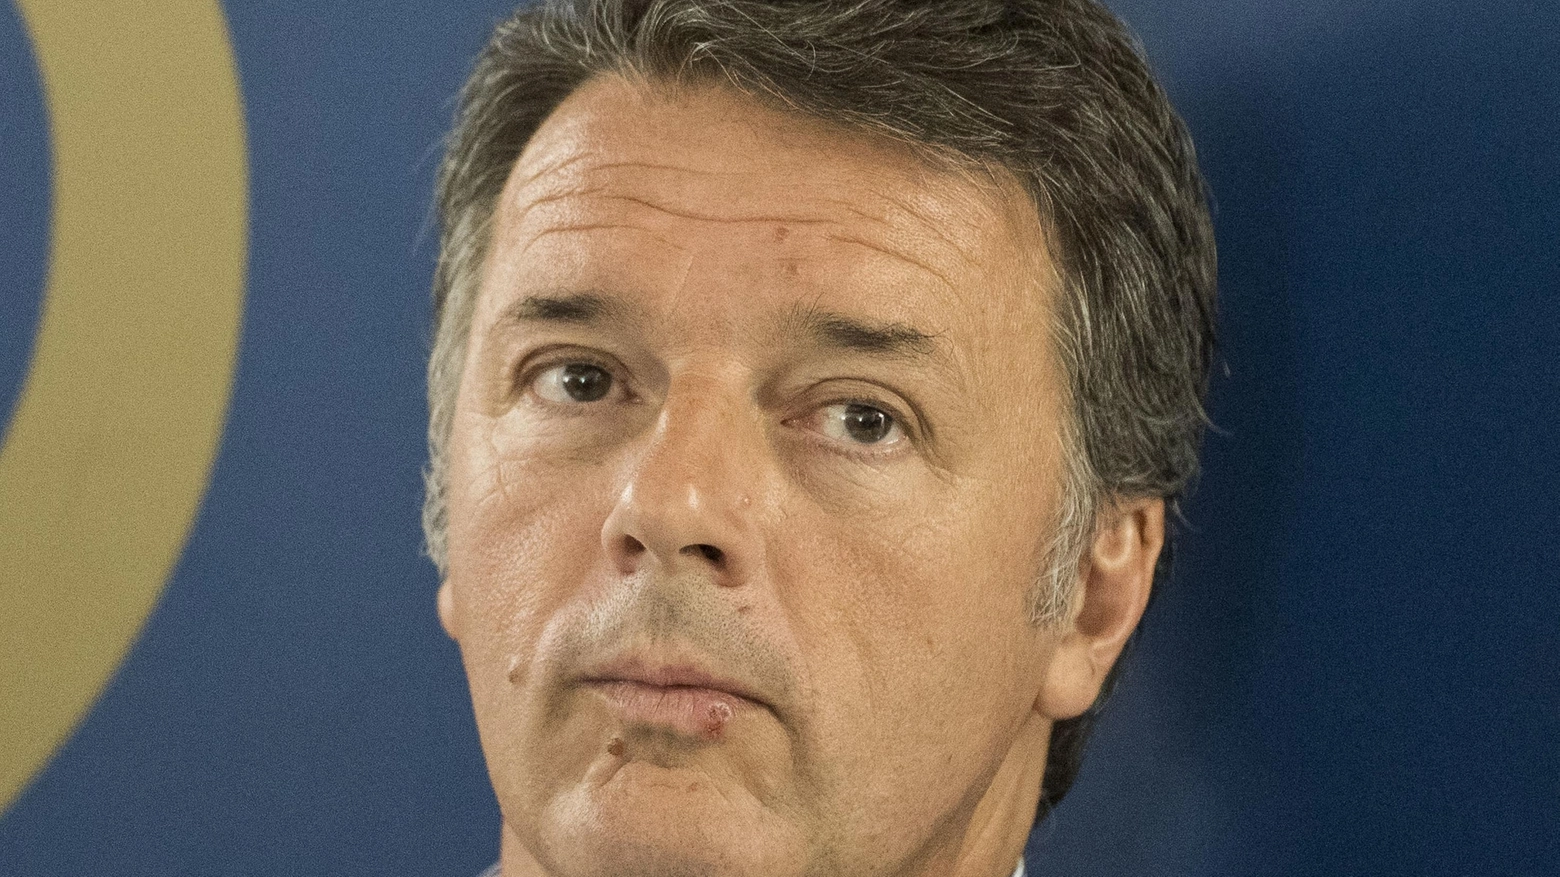 

L’effetto Renzi a Milano: indagini su Santanchè e La Russa jr.